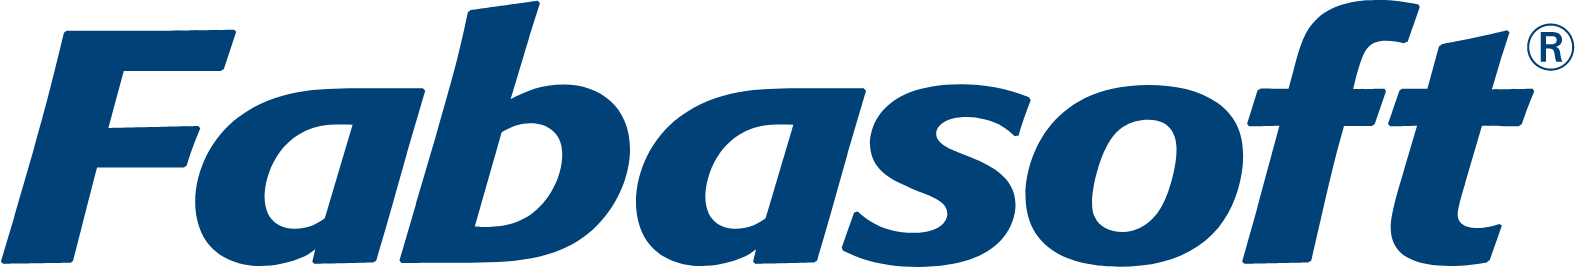 Fabasoft logo large (transparent PNG)